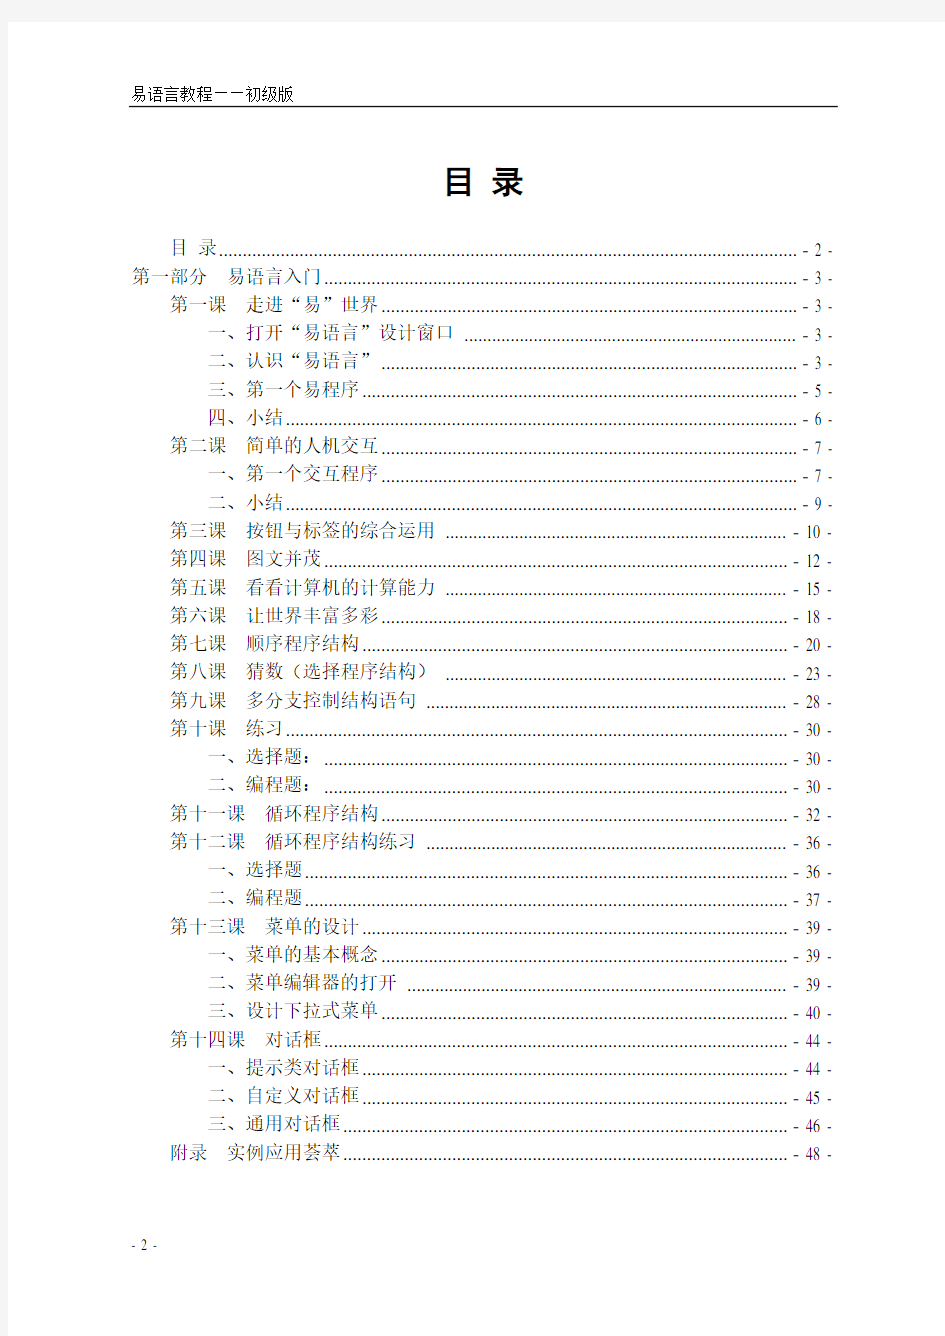 (完整版)易语言中文编程-从入门到精通【图文】